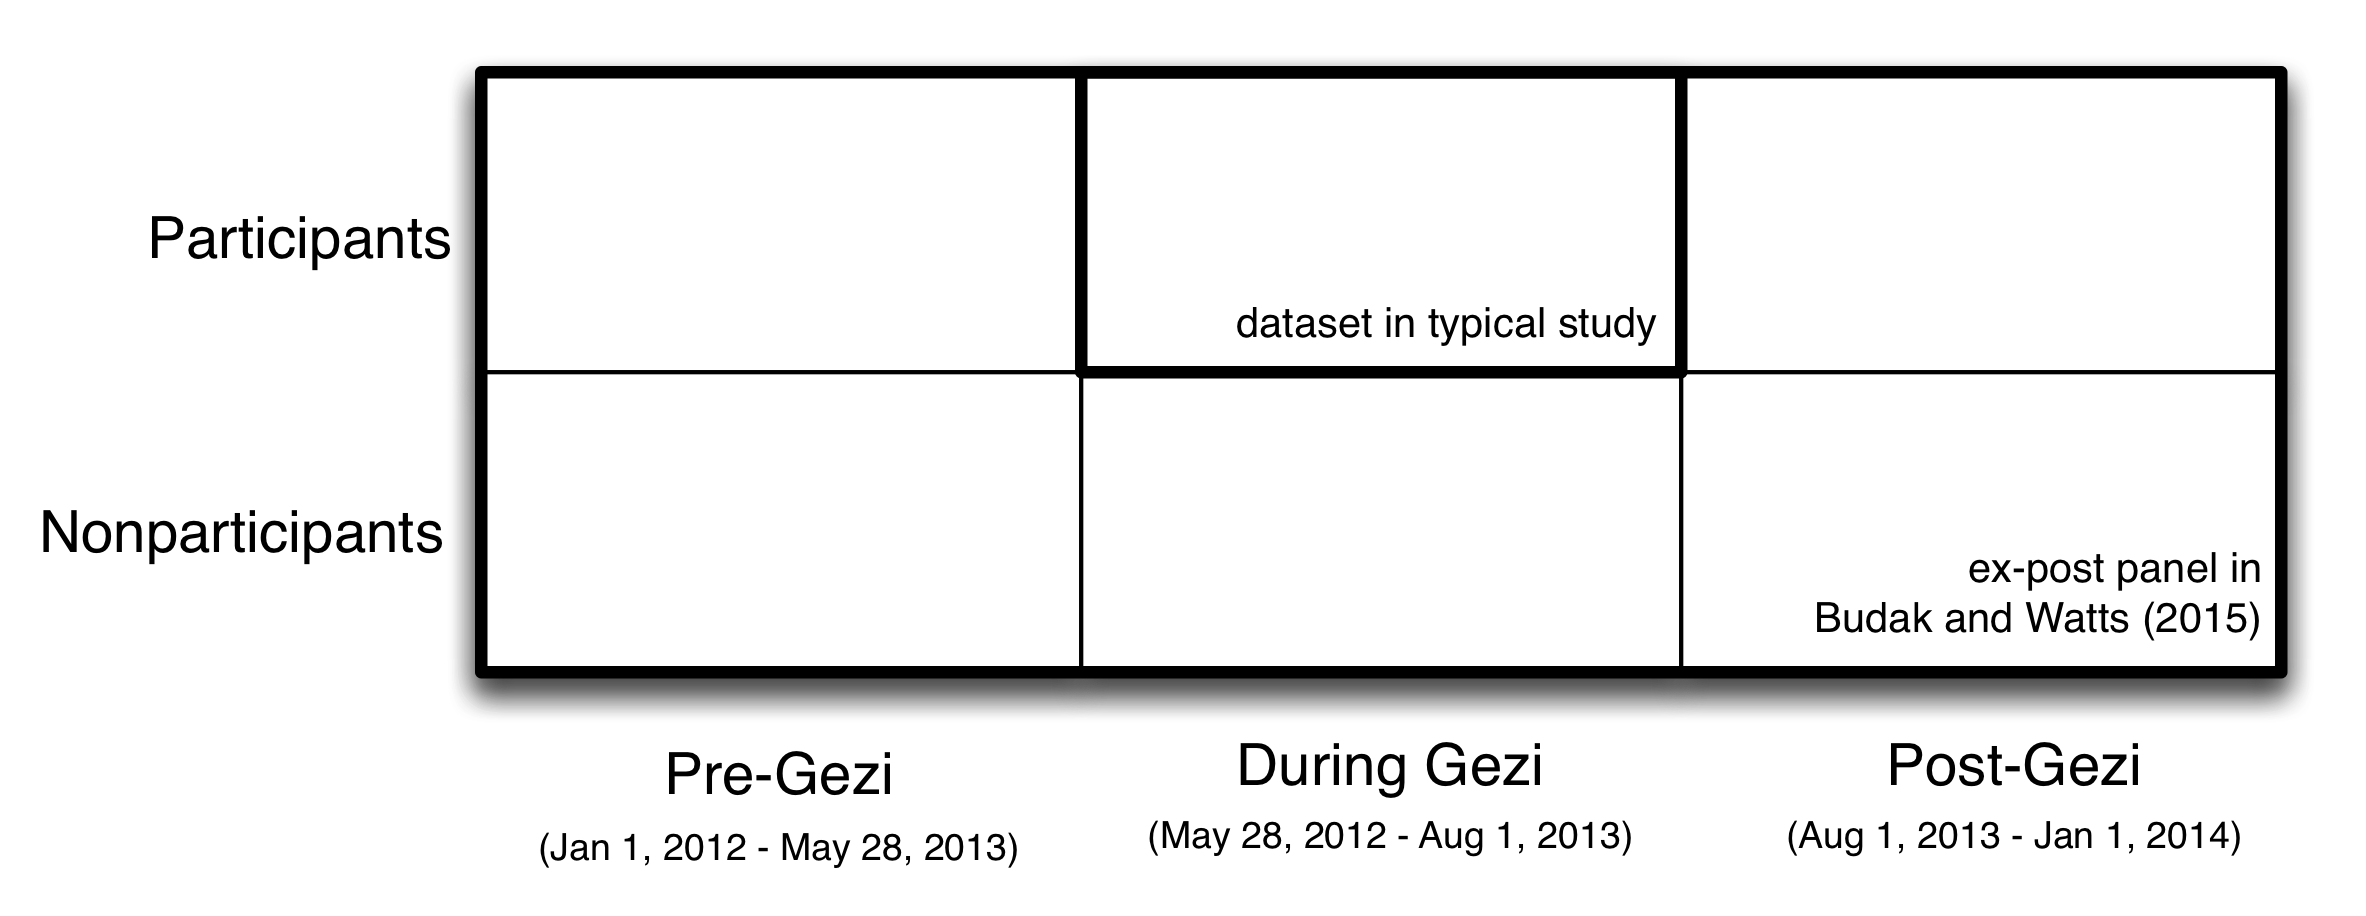 Зураг 2.2: 2013 оны зун Турк улсад Occupy Gezi эсэргүүцлийг судлахын тулд Budak, Watts (2015) -ийг ашигладаг дизайныг Budak, Watts (2015) ашигладаг. Твиттерийн байнгын шинж чанарыг ашиглан судлаачид " Хоёр жилийн хугацаанд 30,000 хүн. Эсэргүүцлийн үеэр оролцогчдод анхаарлаа хандуулсан ердийн судалгаанаас ялгаатай тал нь 1) оролцогчдоос өгөгдөлийн өмнө болон дараа өгөгдөл, 2) оролцогч бусдаас өгөгдөлийн өмнө, хойно, дараа нь өгөгдөл өгдөг. Энэхүү баяжуулсан өгөгдлийн бүтэц нь Белак, Ваттс нарыг Gezi эсэргүүцлийн жагсаалд ямар төрлийн хүмүүс оролцож байгааг үнэлэх, оролцогчдын болон оролцогч талуудын оролцооны хандлагад гарсан өөрчлөлтийг тооцоолох боломжийг олгож байна (Gezi ) болон урт хугацаанд (Gezi-ийн өмнөх Gezi-тэй харьцуулсан).